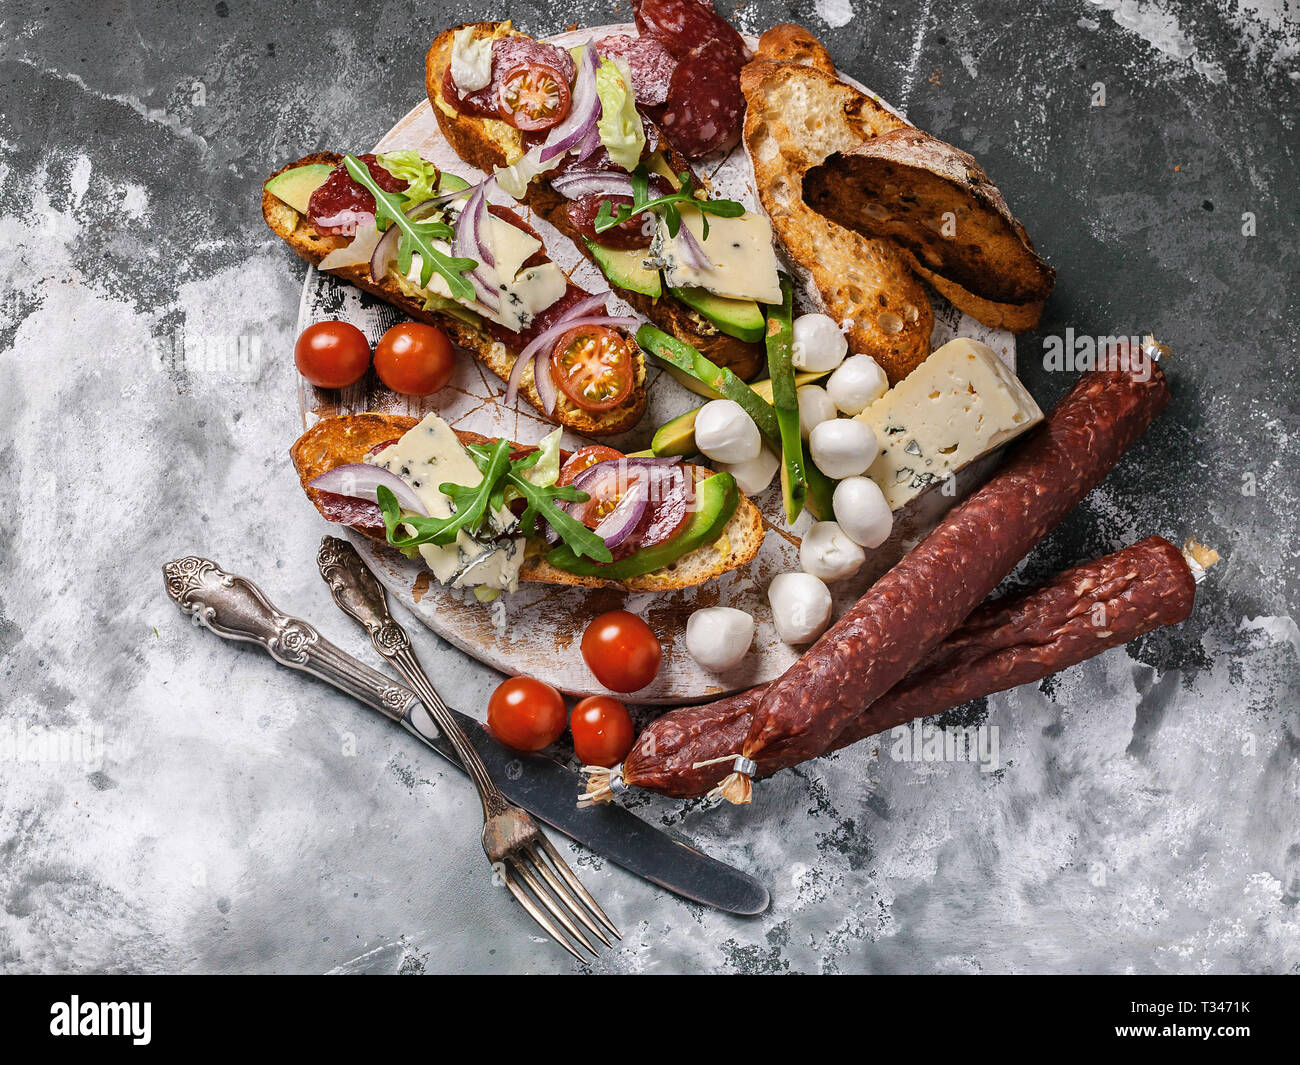 Köstliche Sandwiches mit geräucherter Wurst, Avocado, Käse, Tomaten, roten Zwiebeln und Rucola. Ansicht von oben Stockfoto